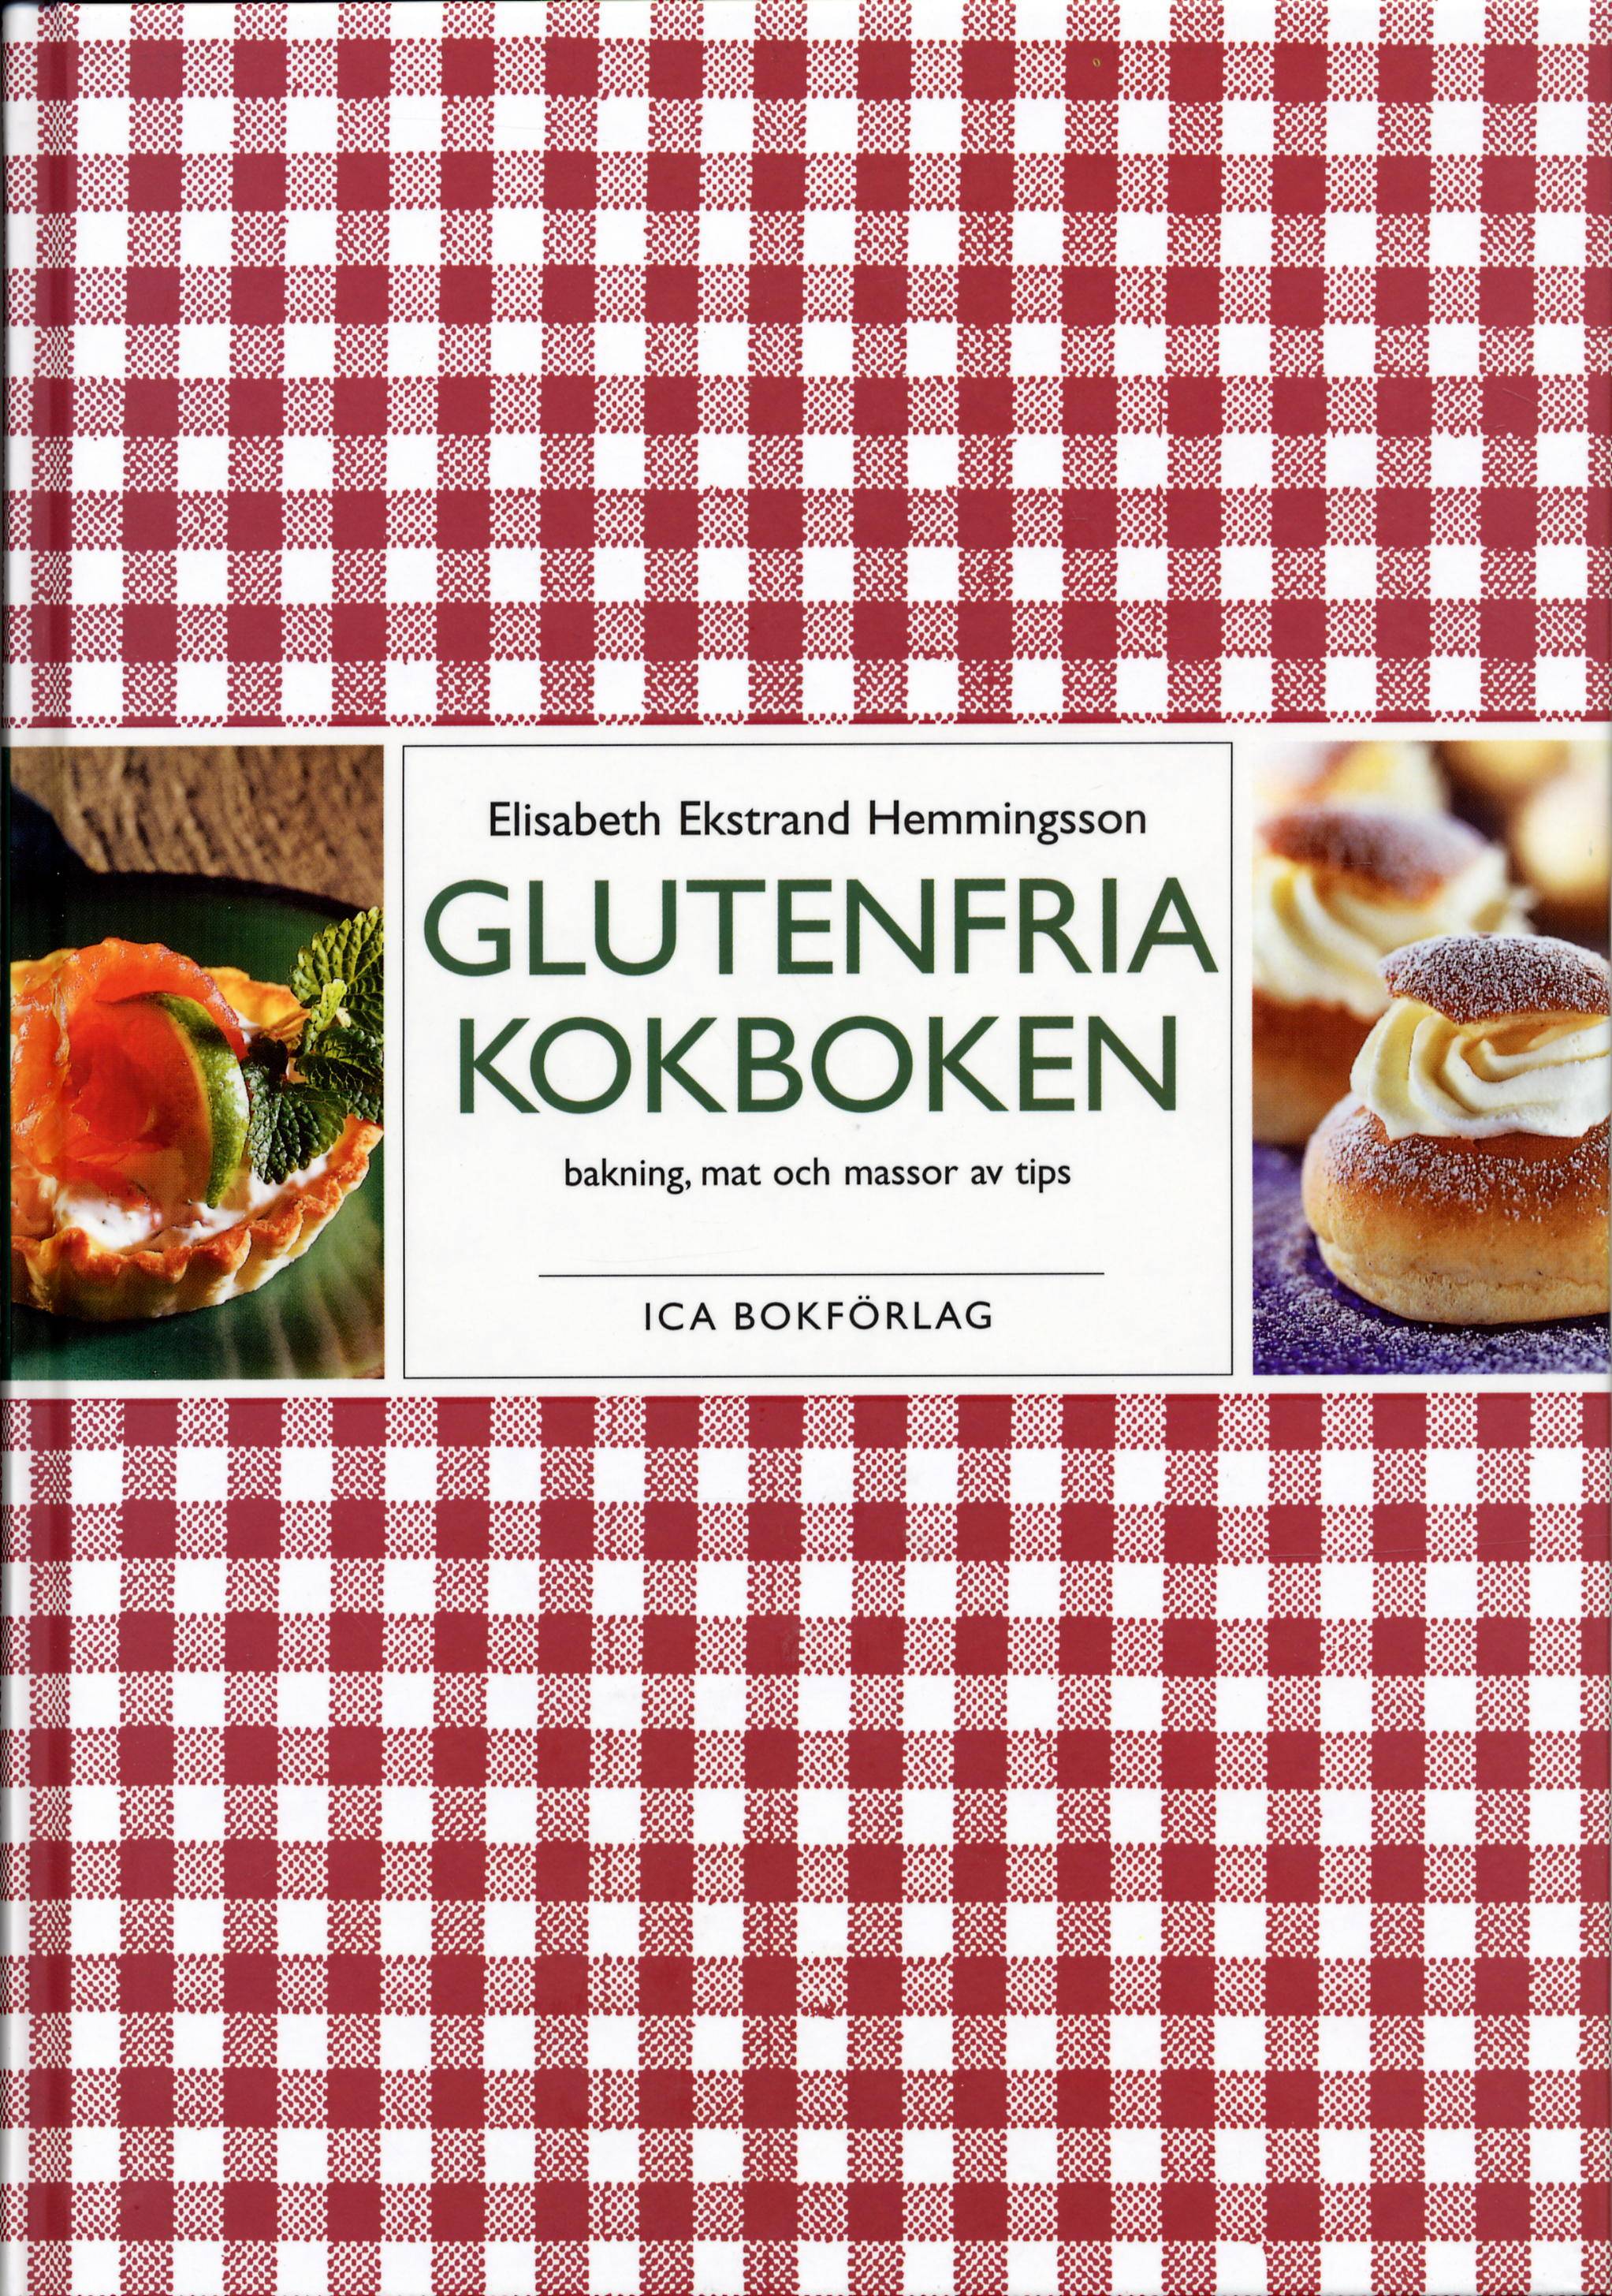 Glutenfria kokboken : bakning, mat och massor av tips